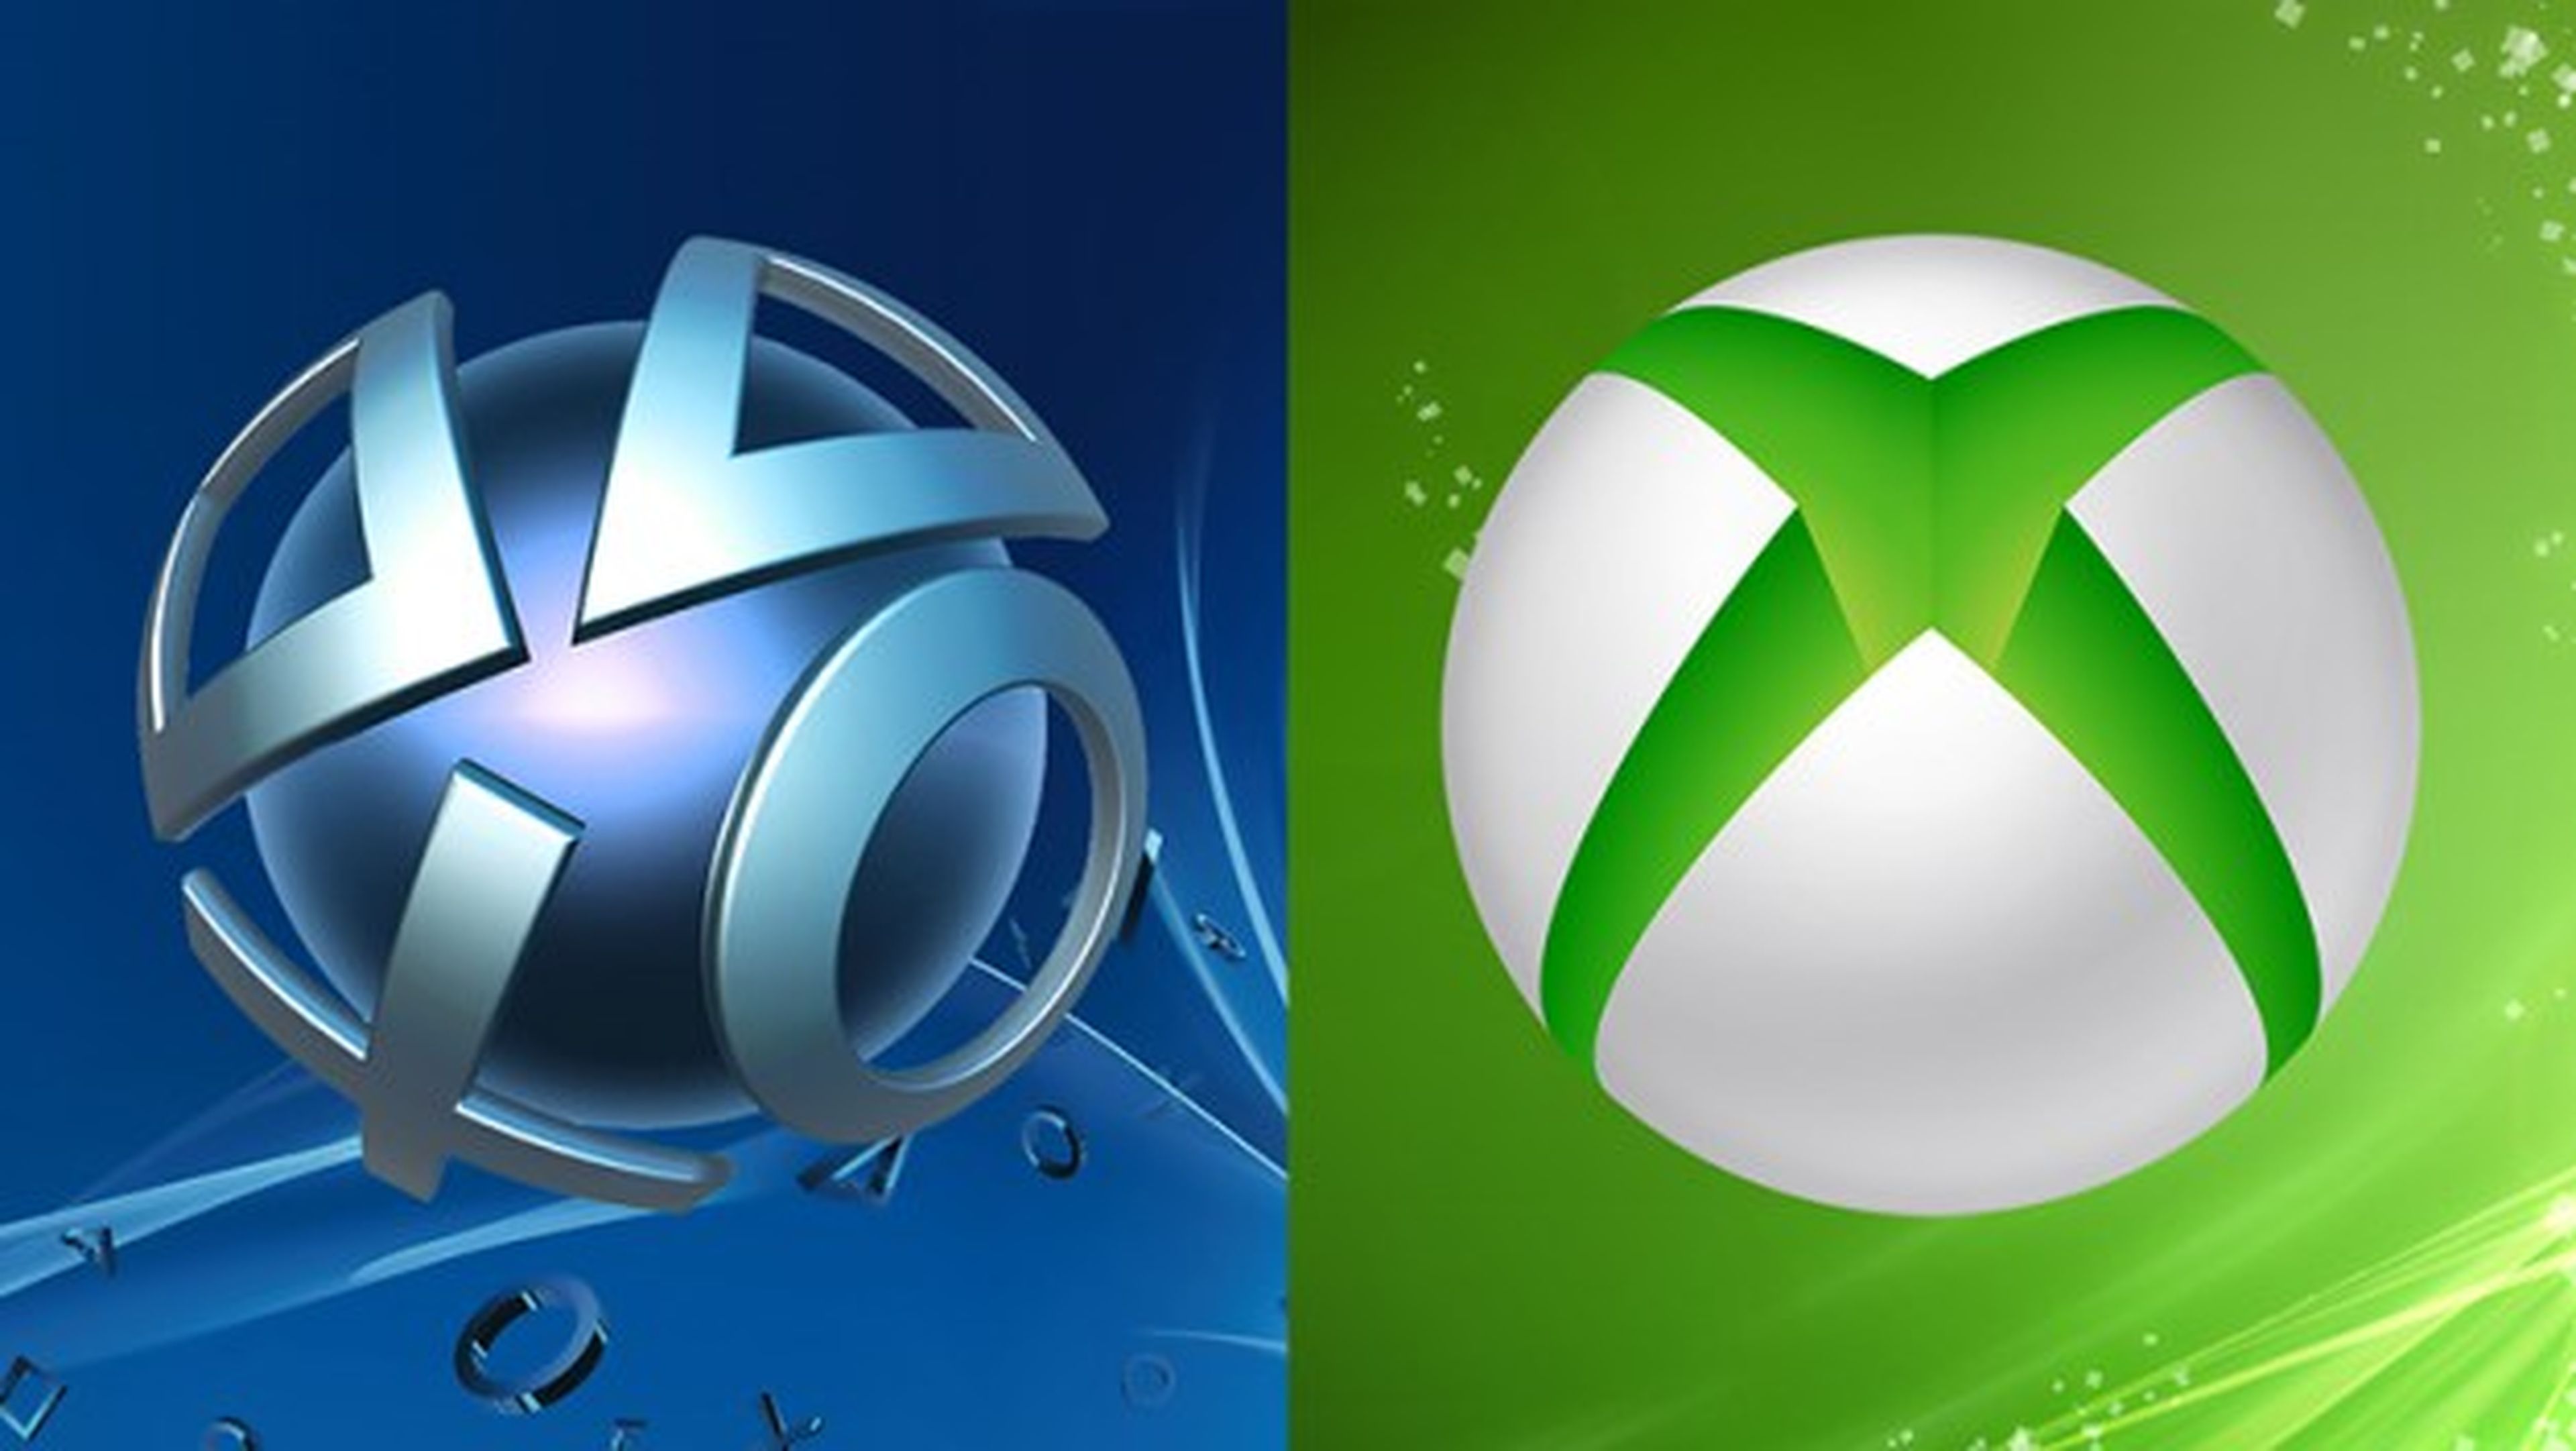 Juego cruzado entre PS4 y Xbox One - Shuhei Yoshida no lo ve claro